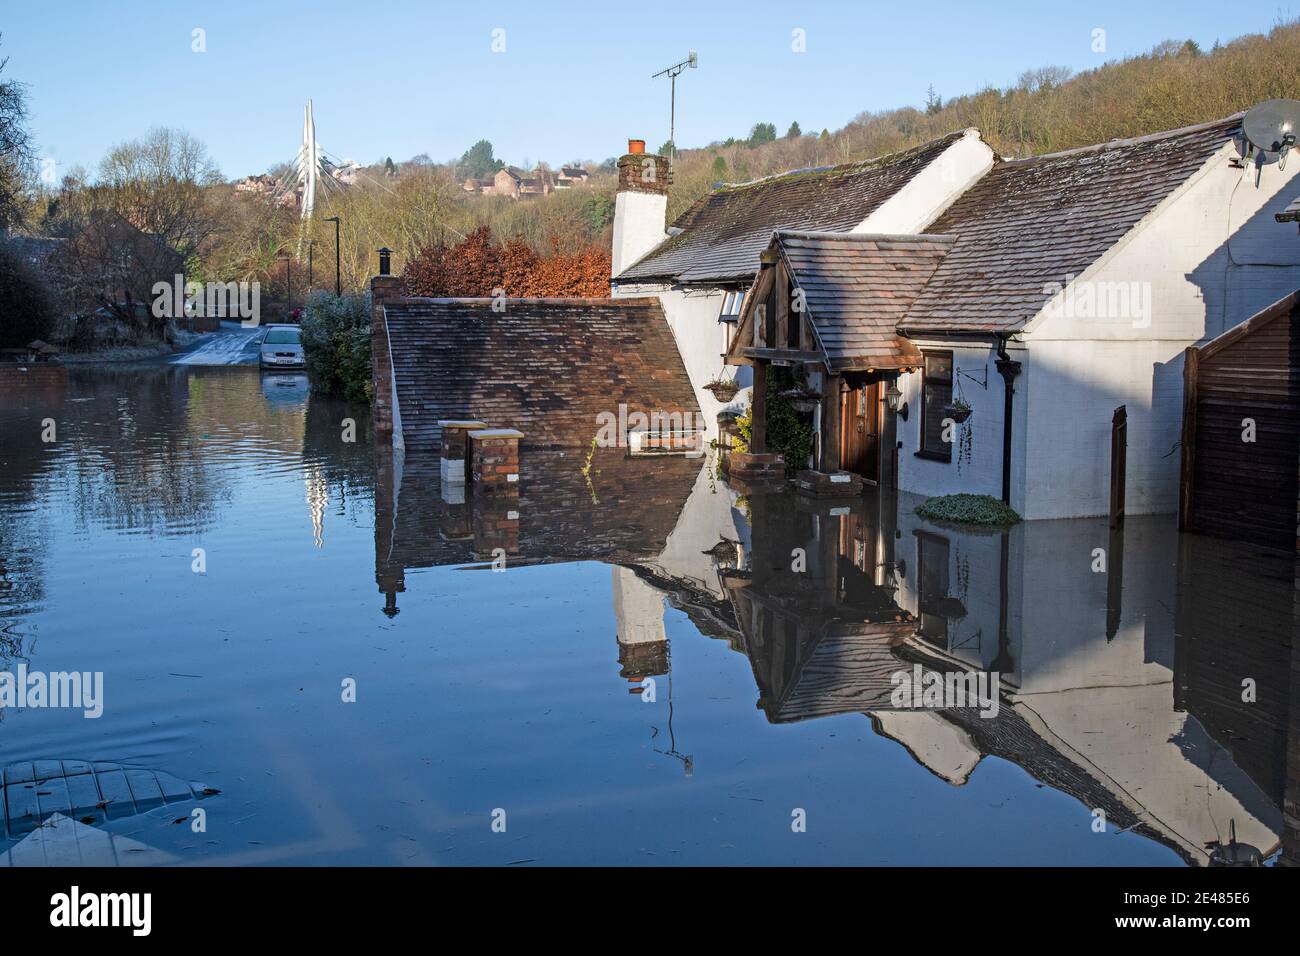 Shropshire, Reino Unido. 22 de enero de 2021. El río Severn ha explotado sus orillas a lo largo del tramo en Shropshire, inundando las propiedades. El pueblo de Jackfield en el desfiladero de Ironbridge ha sido particularmente inundado. 2020 vio las peores inundaciones en 20 años, y los residentes temen repetir este invierno. Crédito: Rob Carter/Alamy Live News Foto de stock